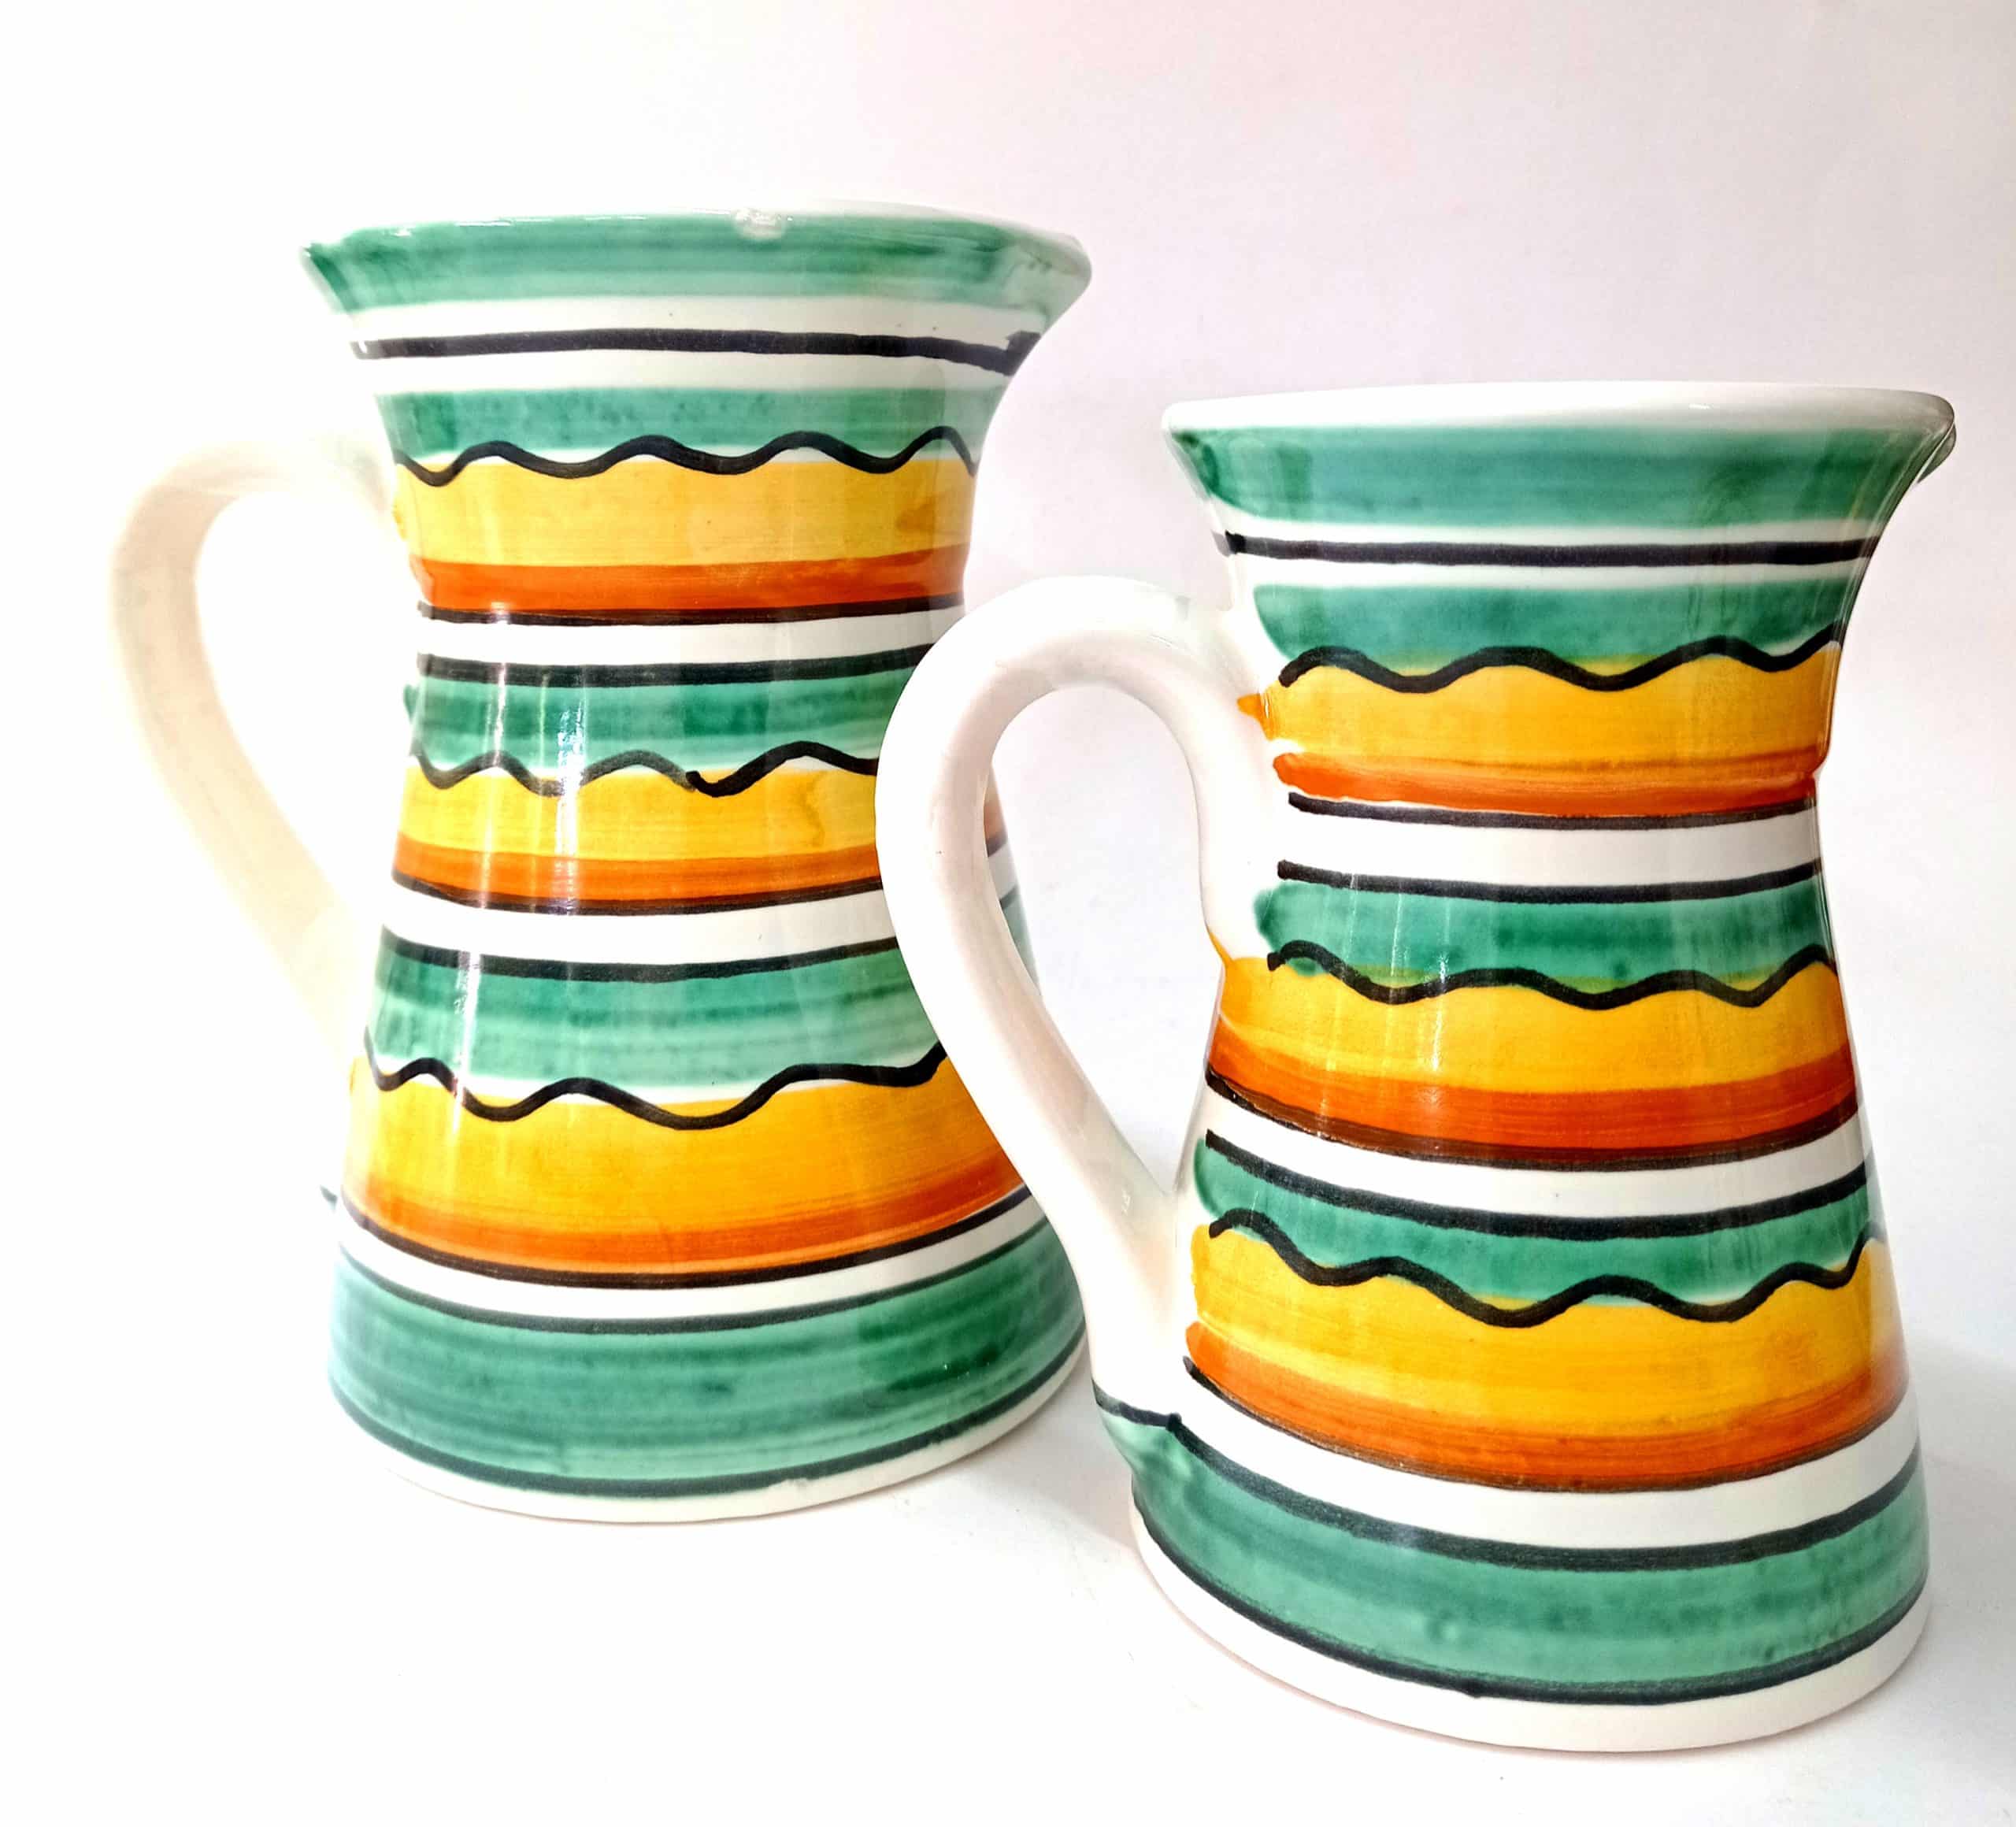 jarras de cerámica tradicional, decoración de interiores, cerámica para decorar el hogar, cerámica artesanal.